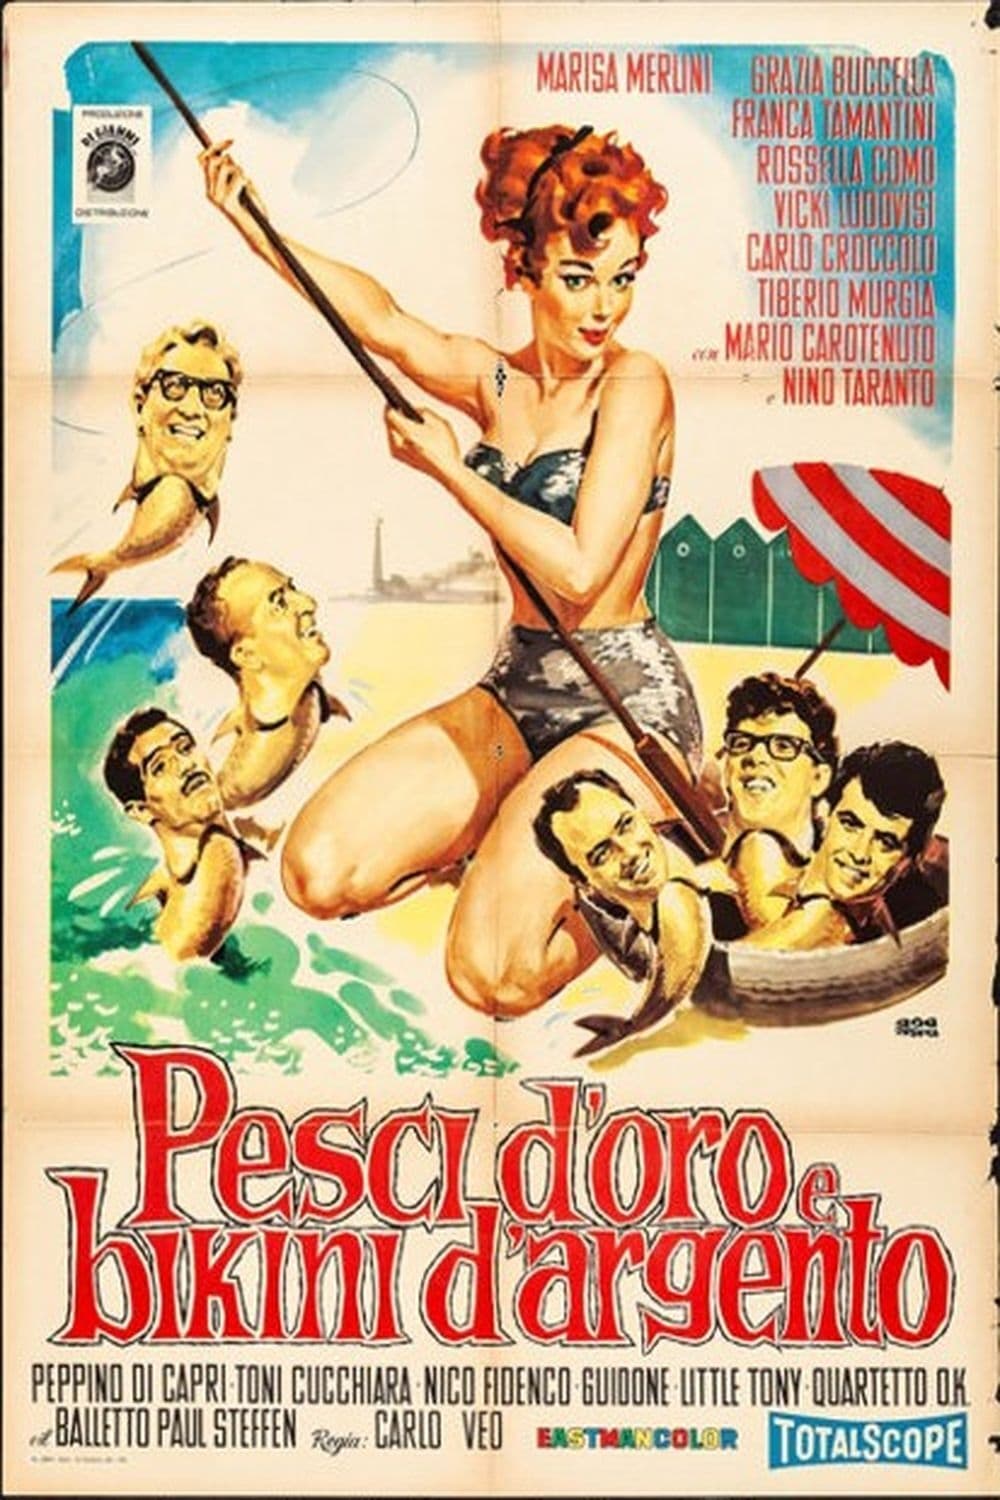 Pesci d'oro e bikini d'argento (1961)